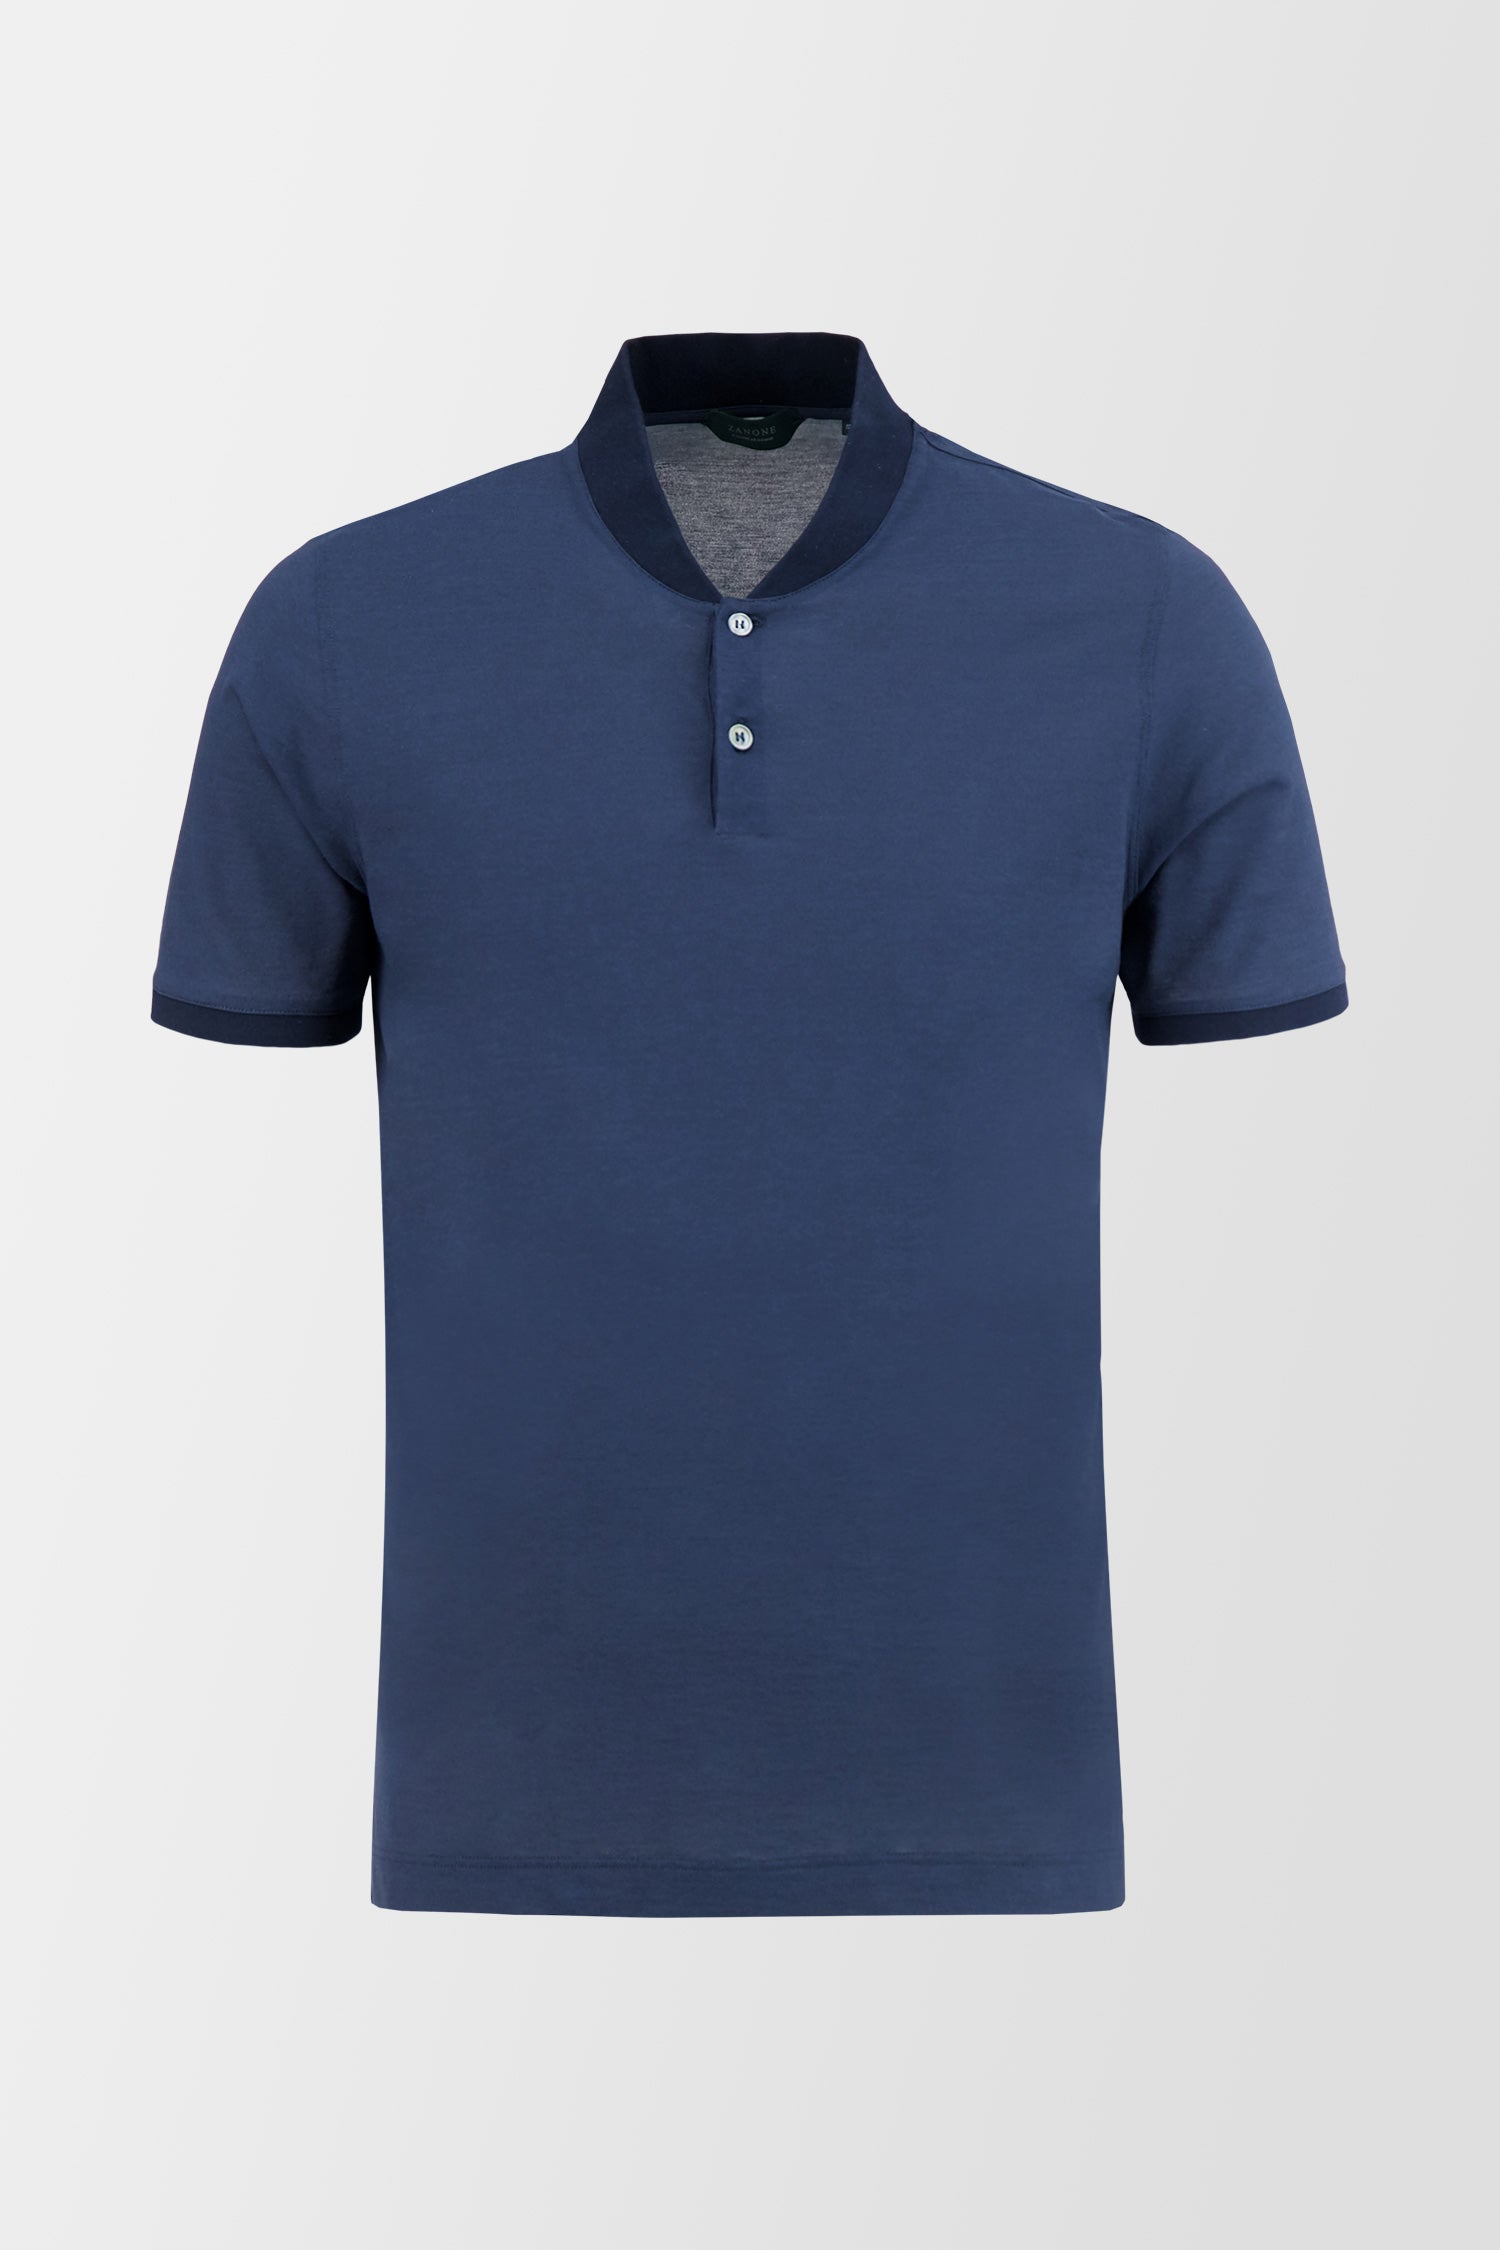 Zanone Blue T-Shirt